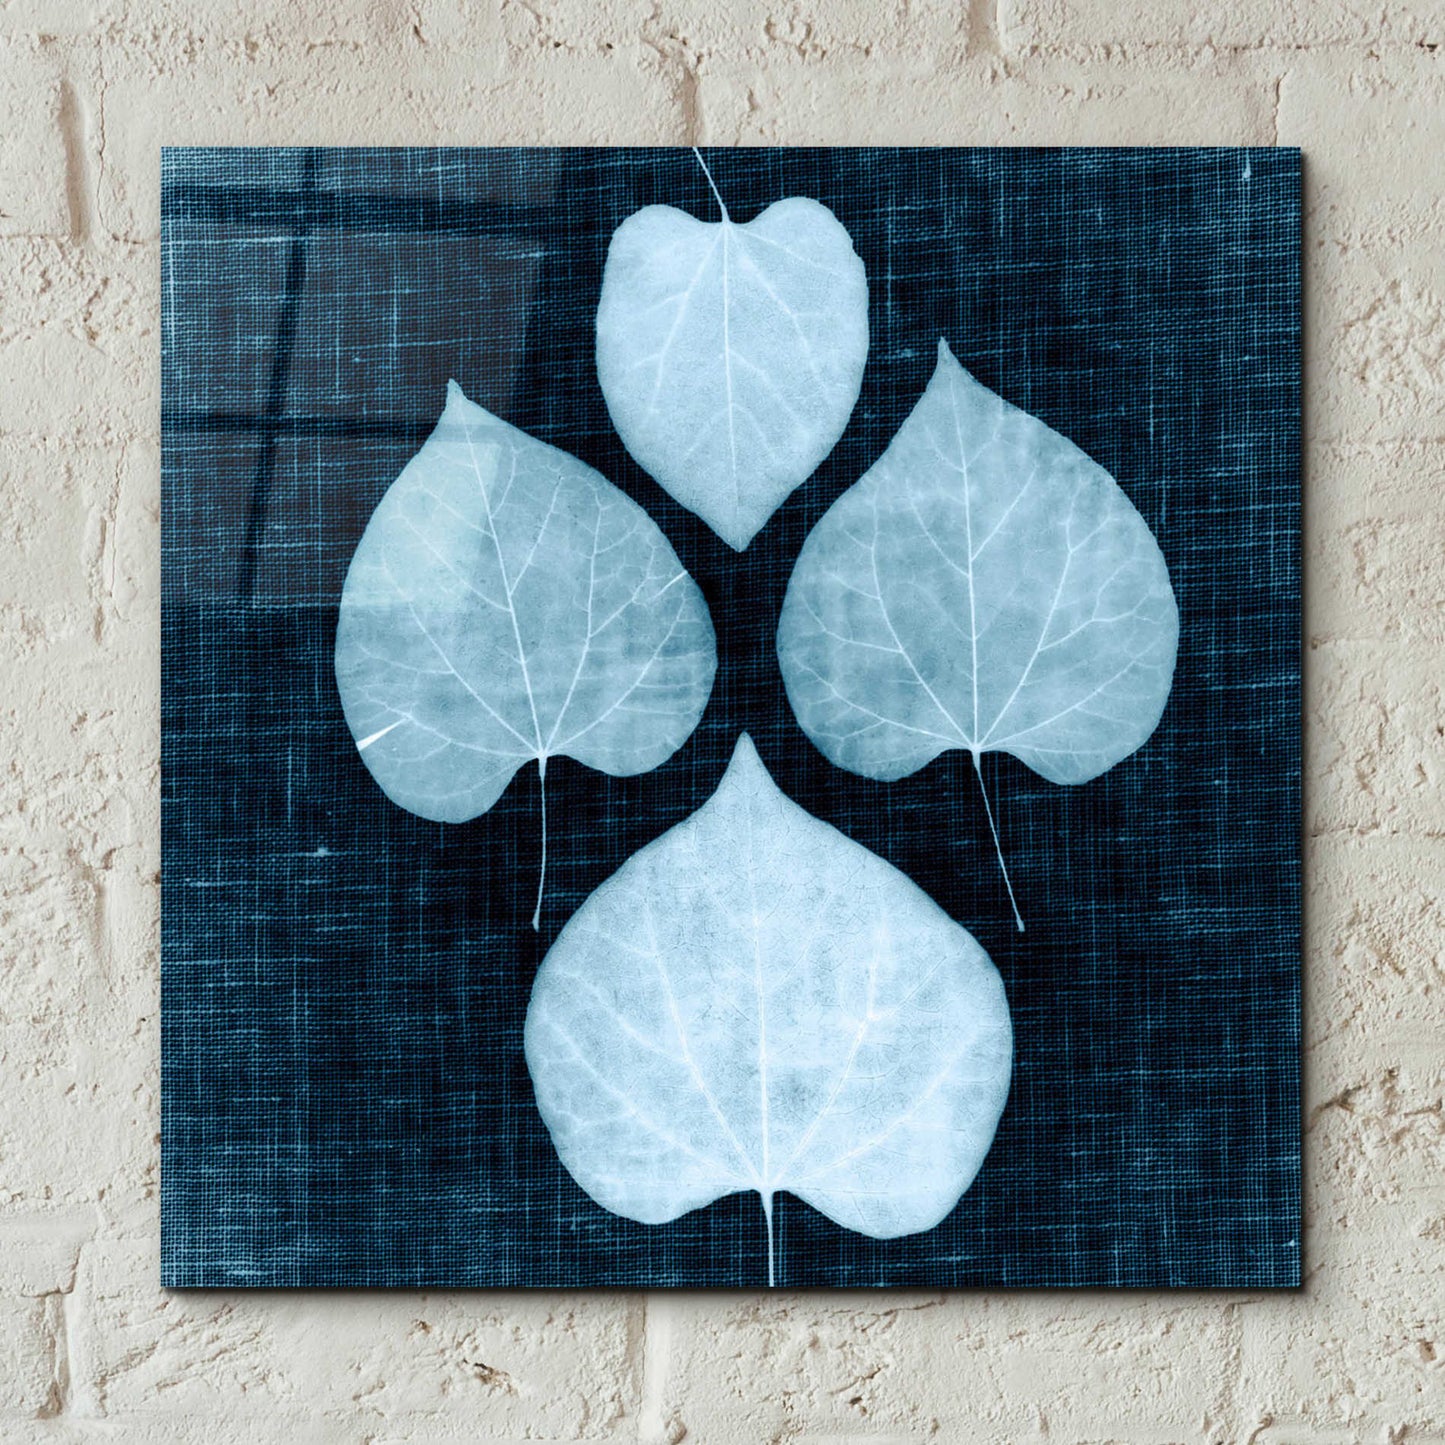 Epic Art 'Leaves on Linen IV' by Debra Van Swearingen, Acrylic Glass Wall Art,12x12